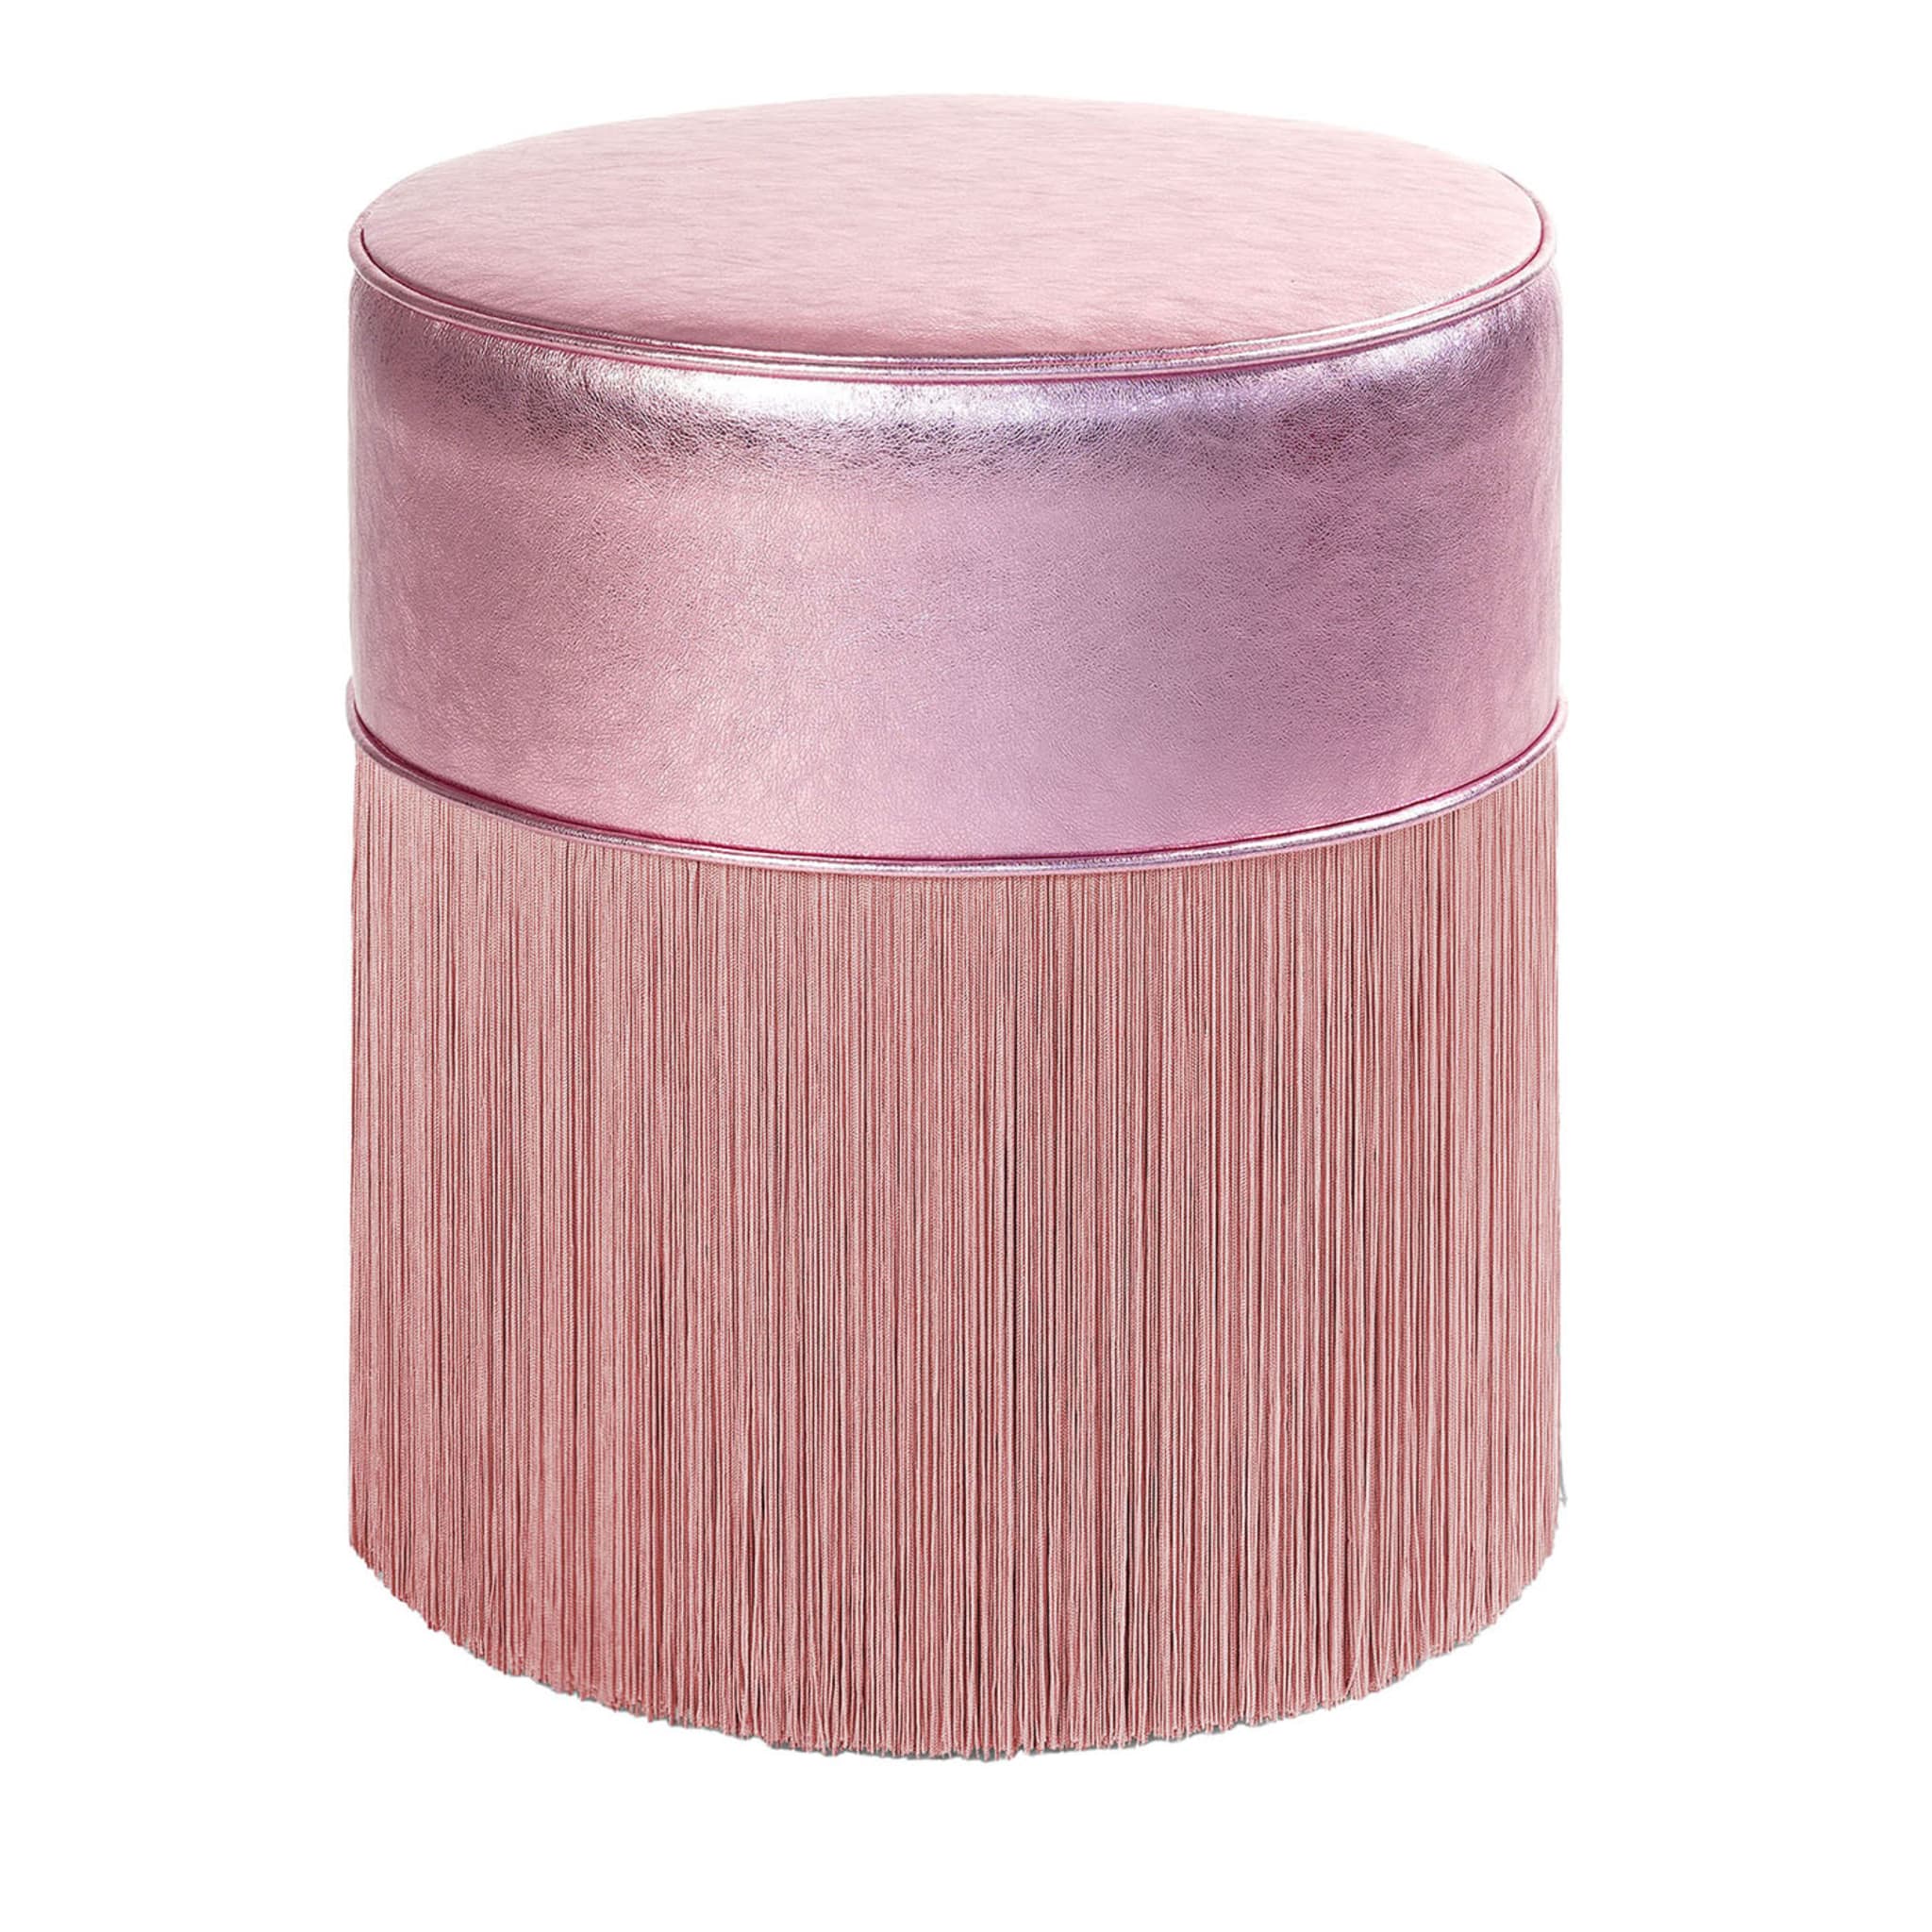 Pouf in pelle metallizzata rosa #2 di Lorenza Bozzoli - Vista principale